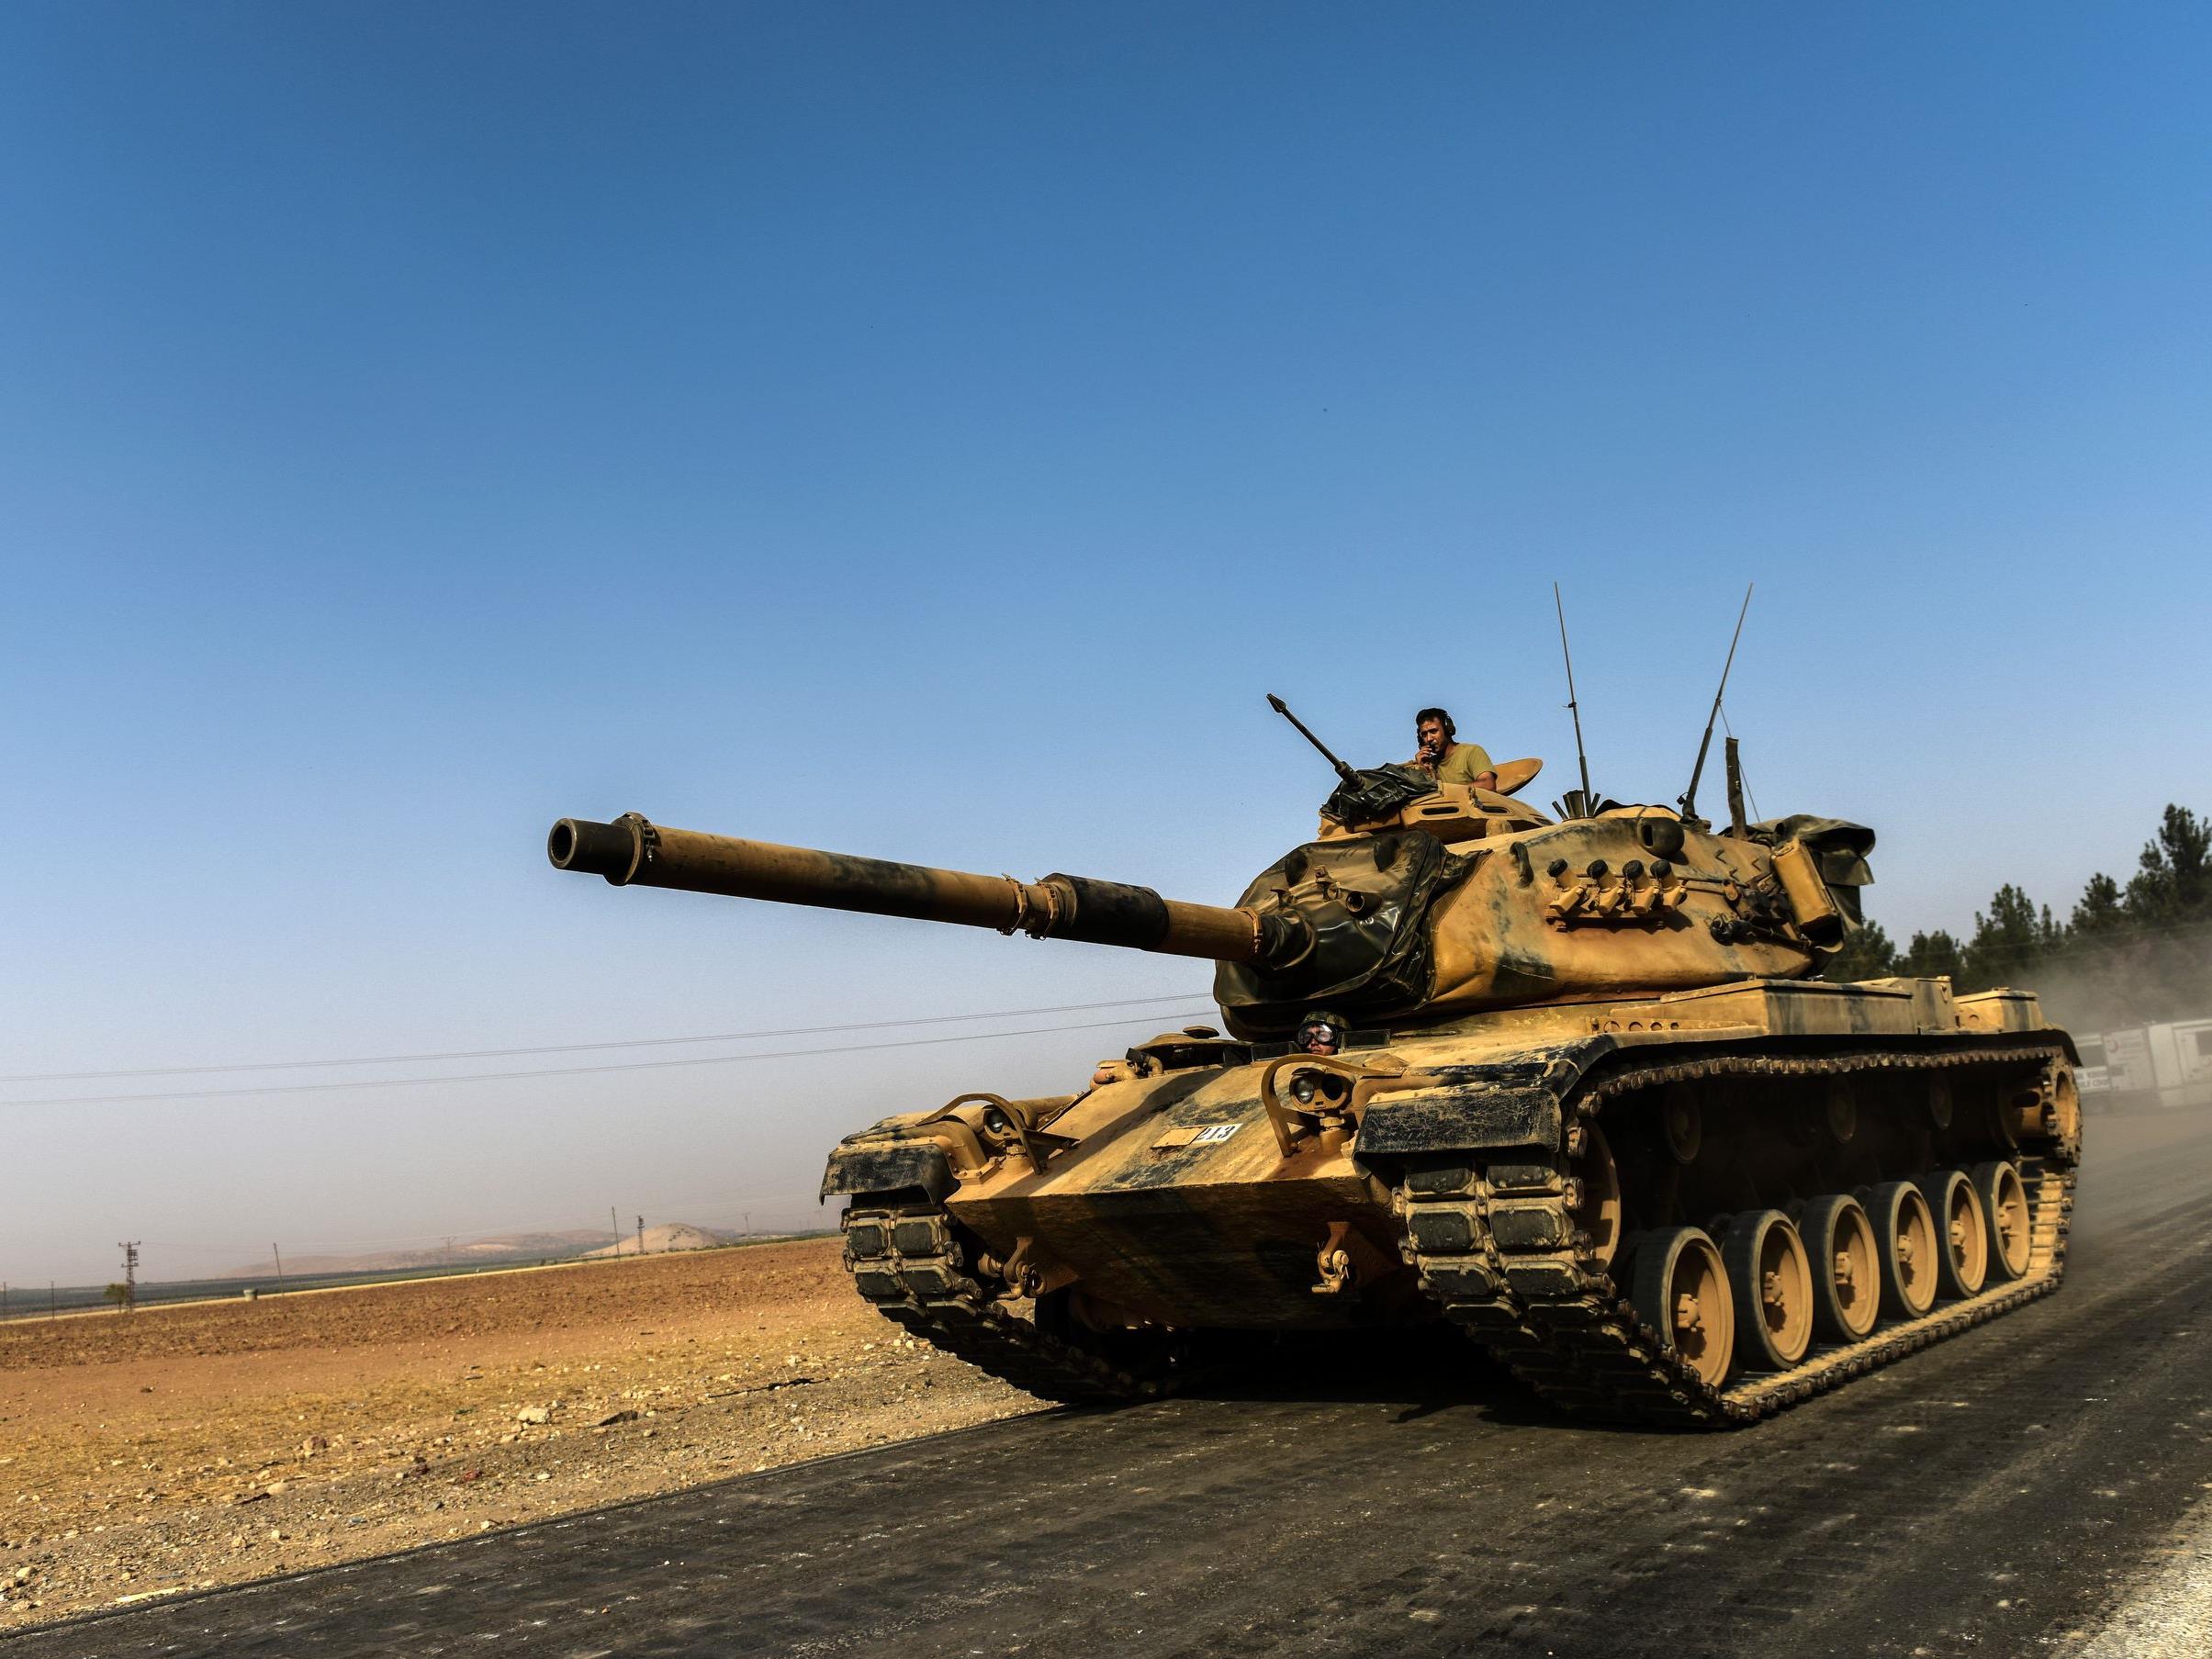 Außenminister: PYD verwende Kampf gegen IS als "Vorwand" - "Wollen den Sumpf trockenlegen".